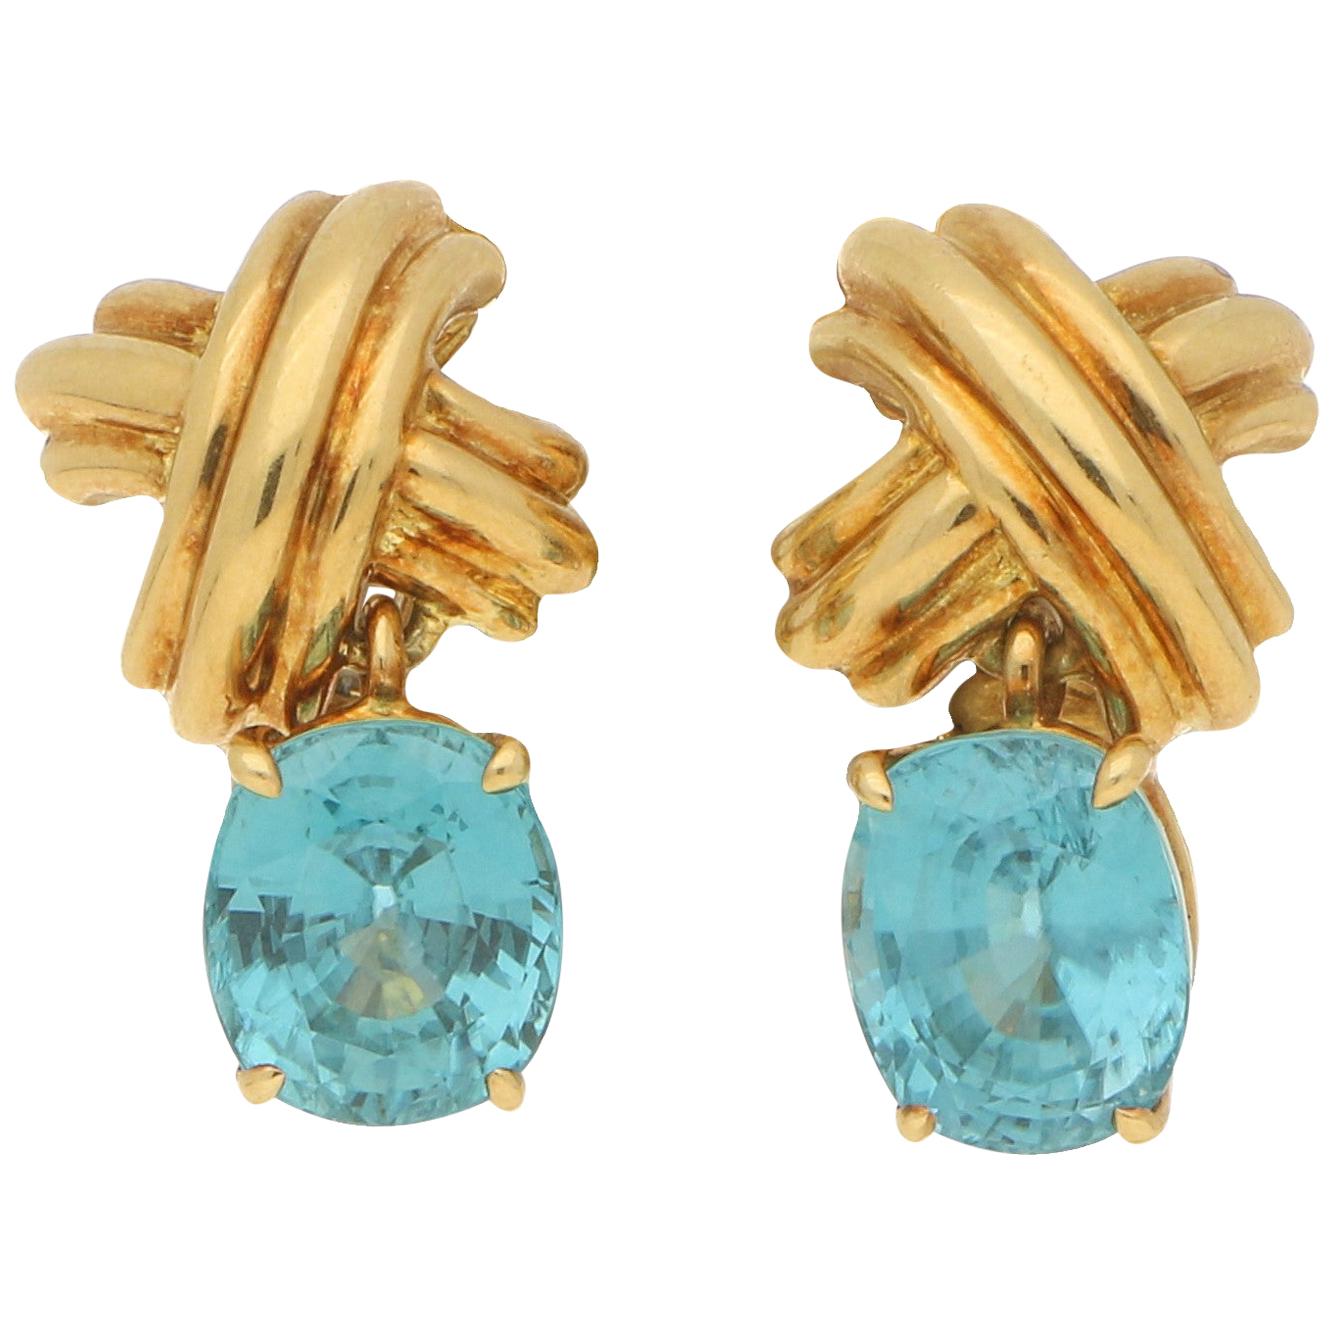  Tiffany & Co. Blue Zircon Cross Earrings in 18 Carat Yellow Gold